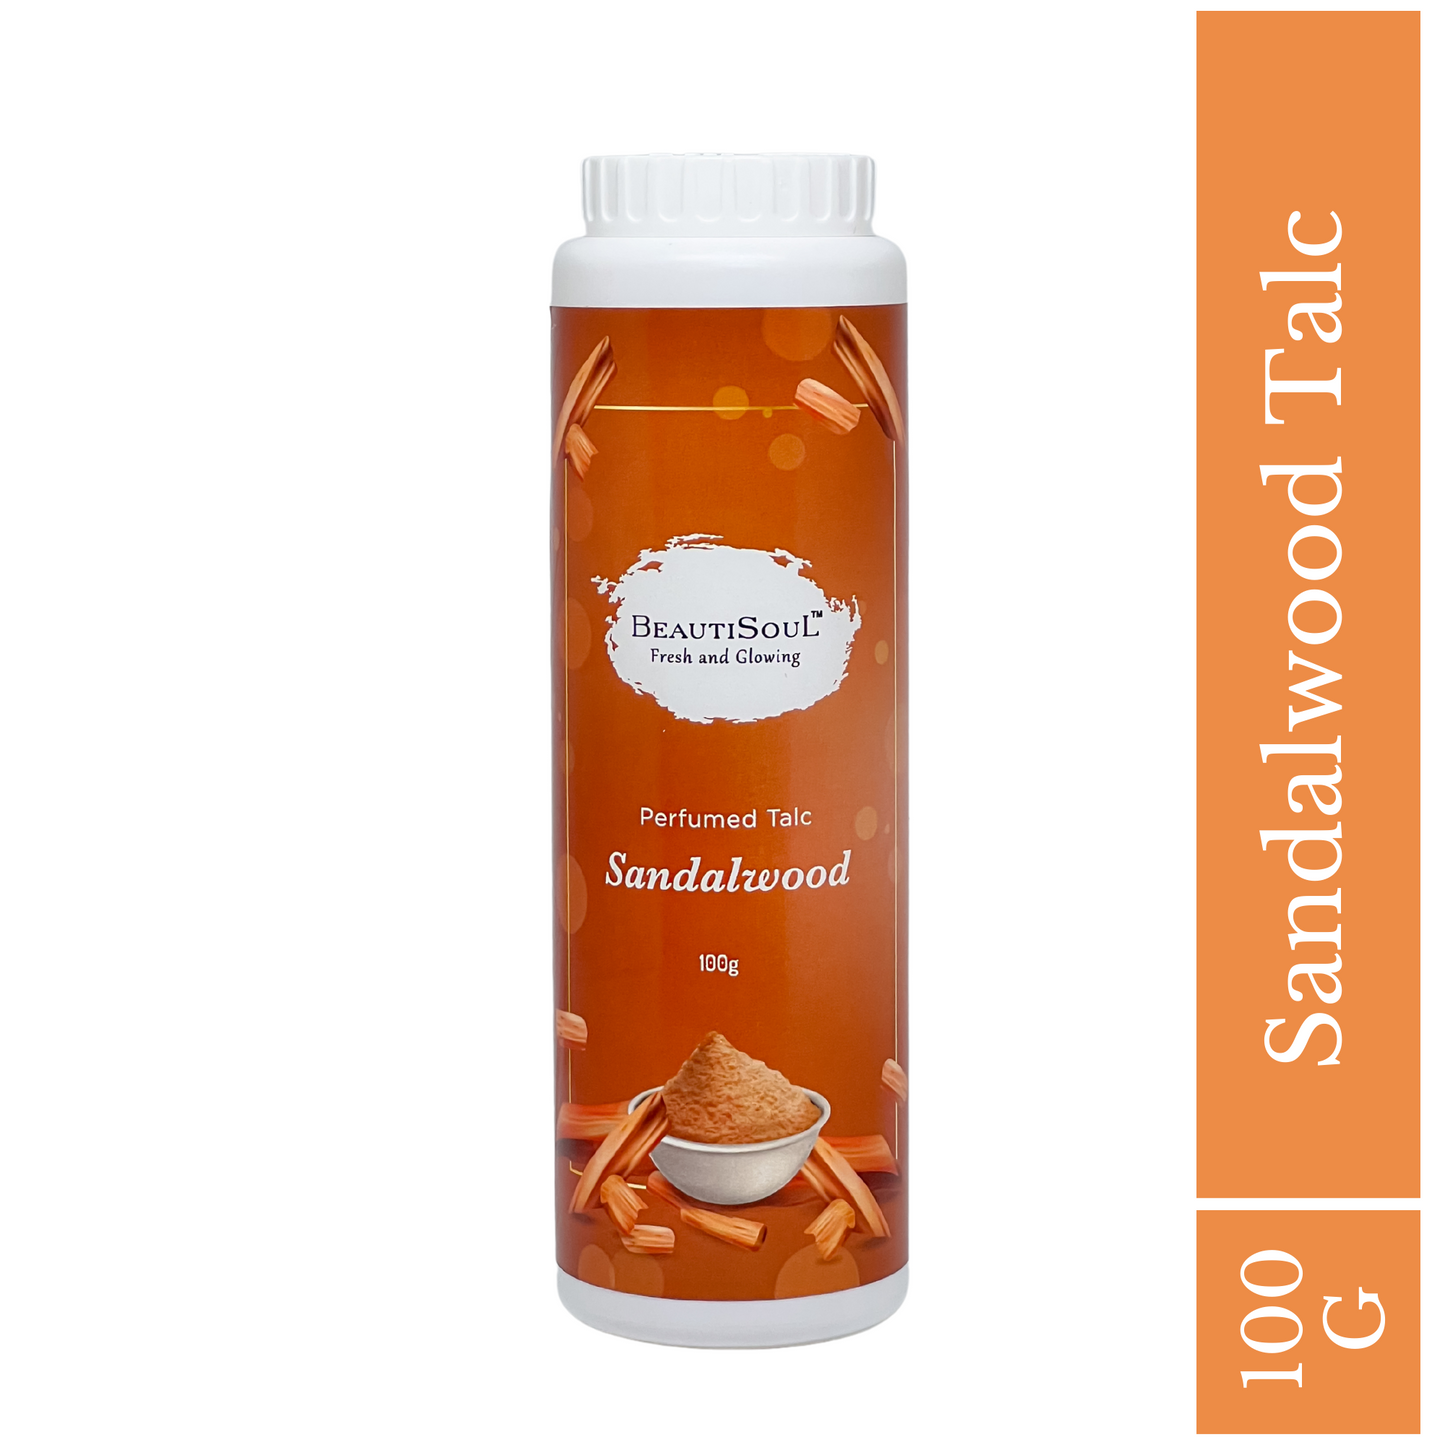 Beautisoul Sandalwood Perfumed Talc for men and women - 100 g